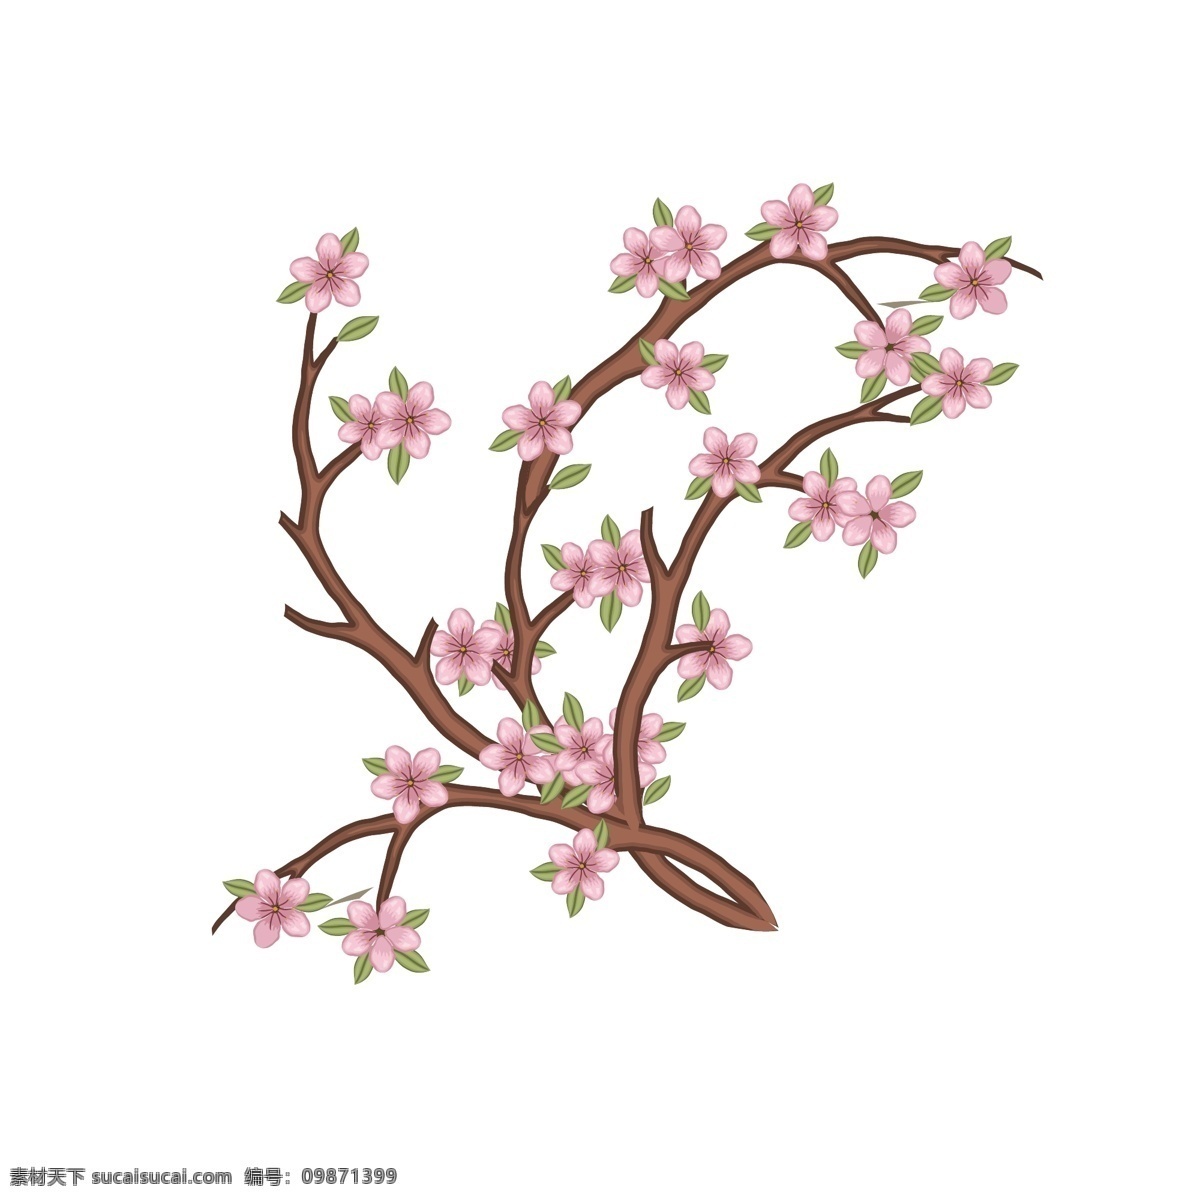 手绘 卡通 写实 植物 桃花